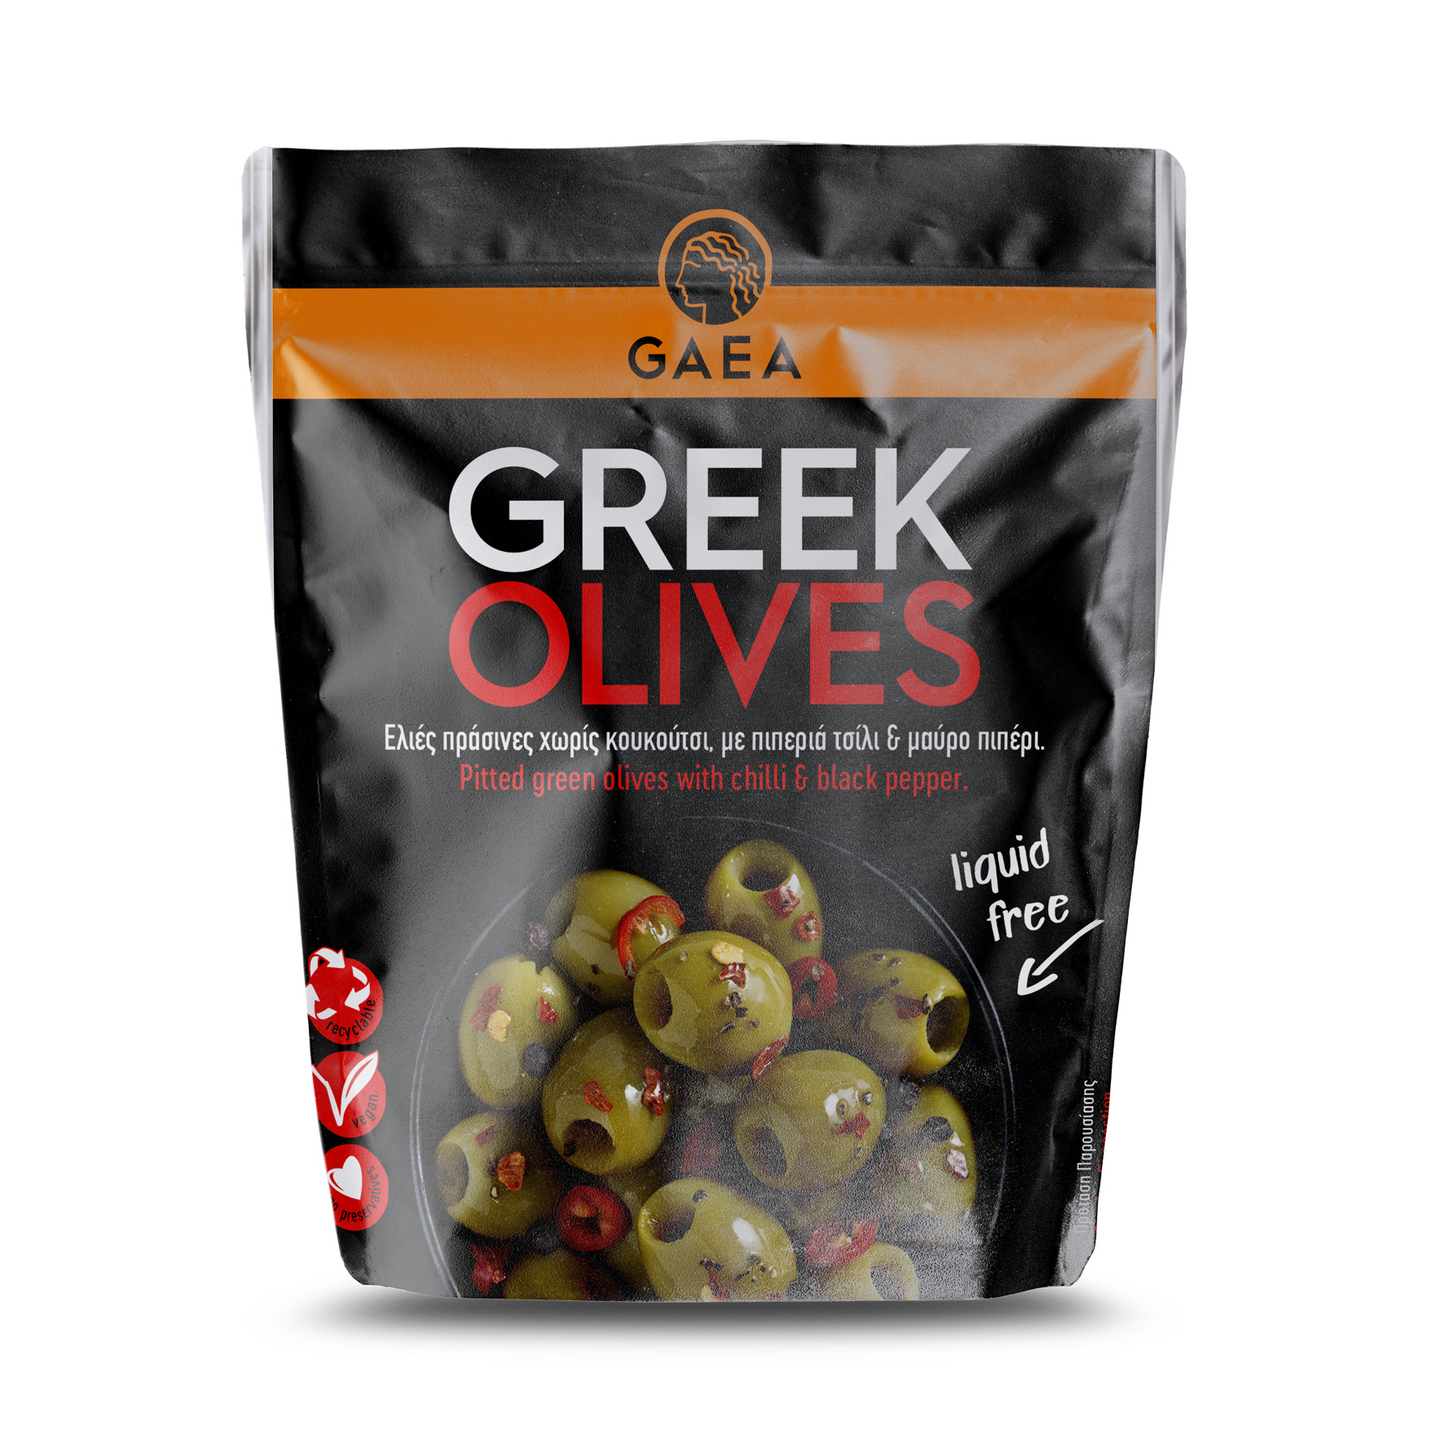 Gaea Kivetön vihreä oliivi marinoitu chilillä & mustapippurilla 150g